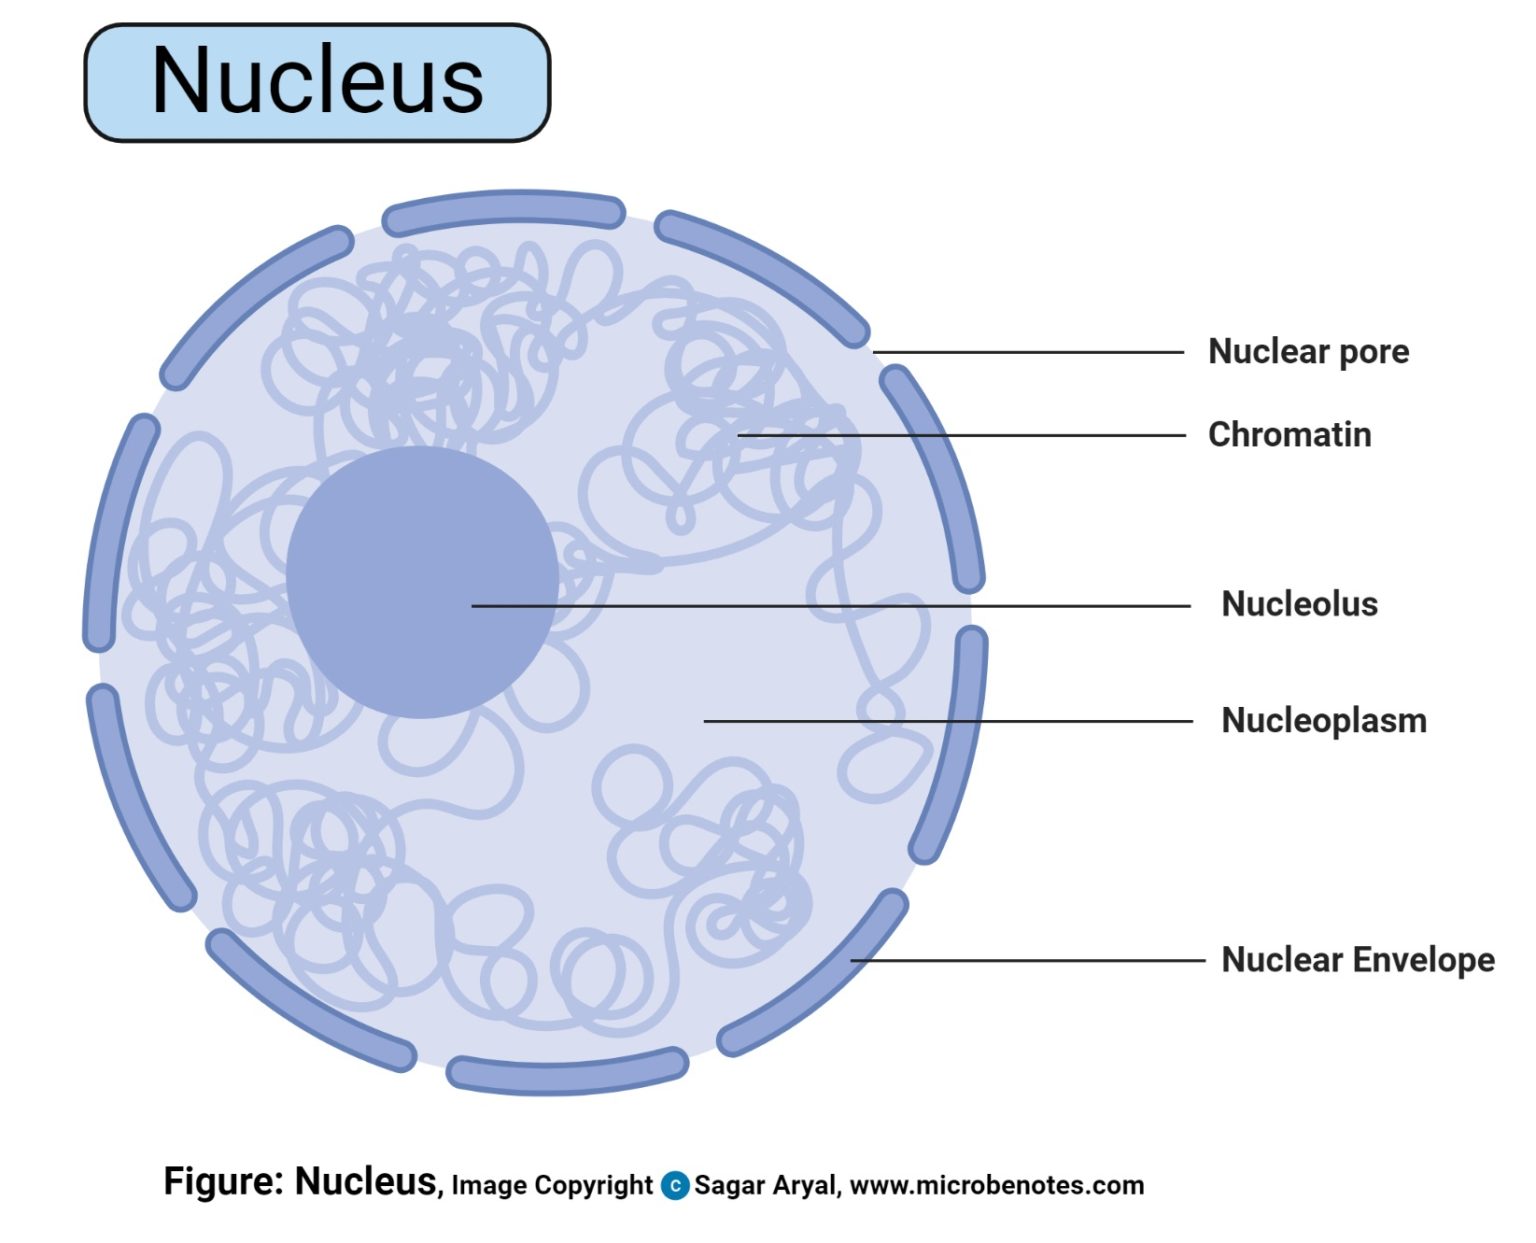 Nucleus Definition, Structure, Parts, Functions, Diagram